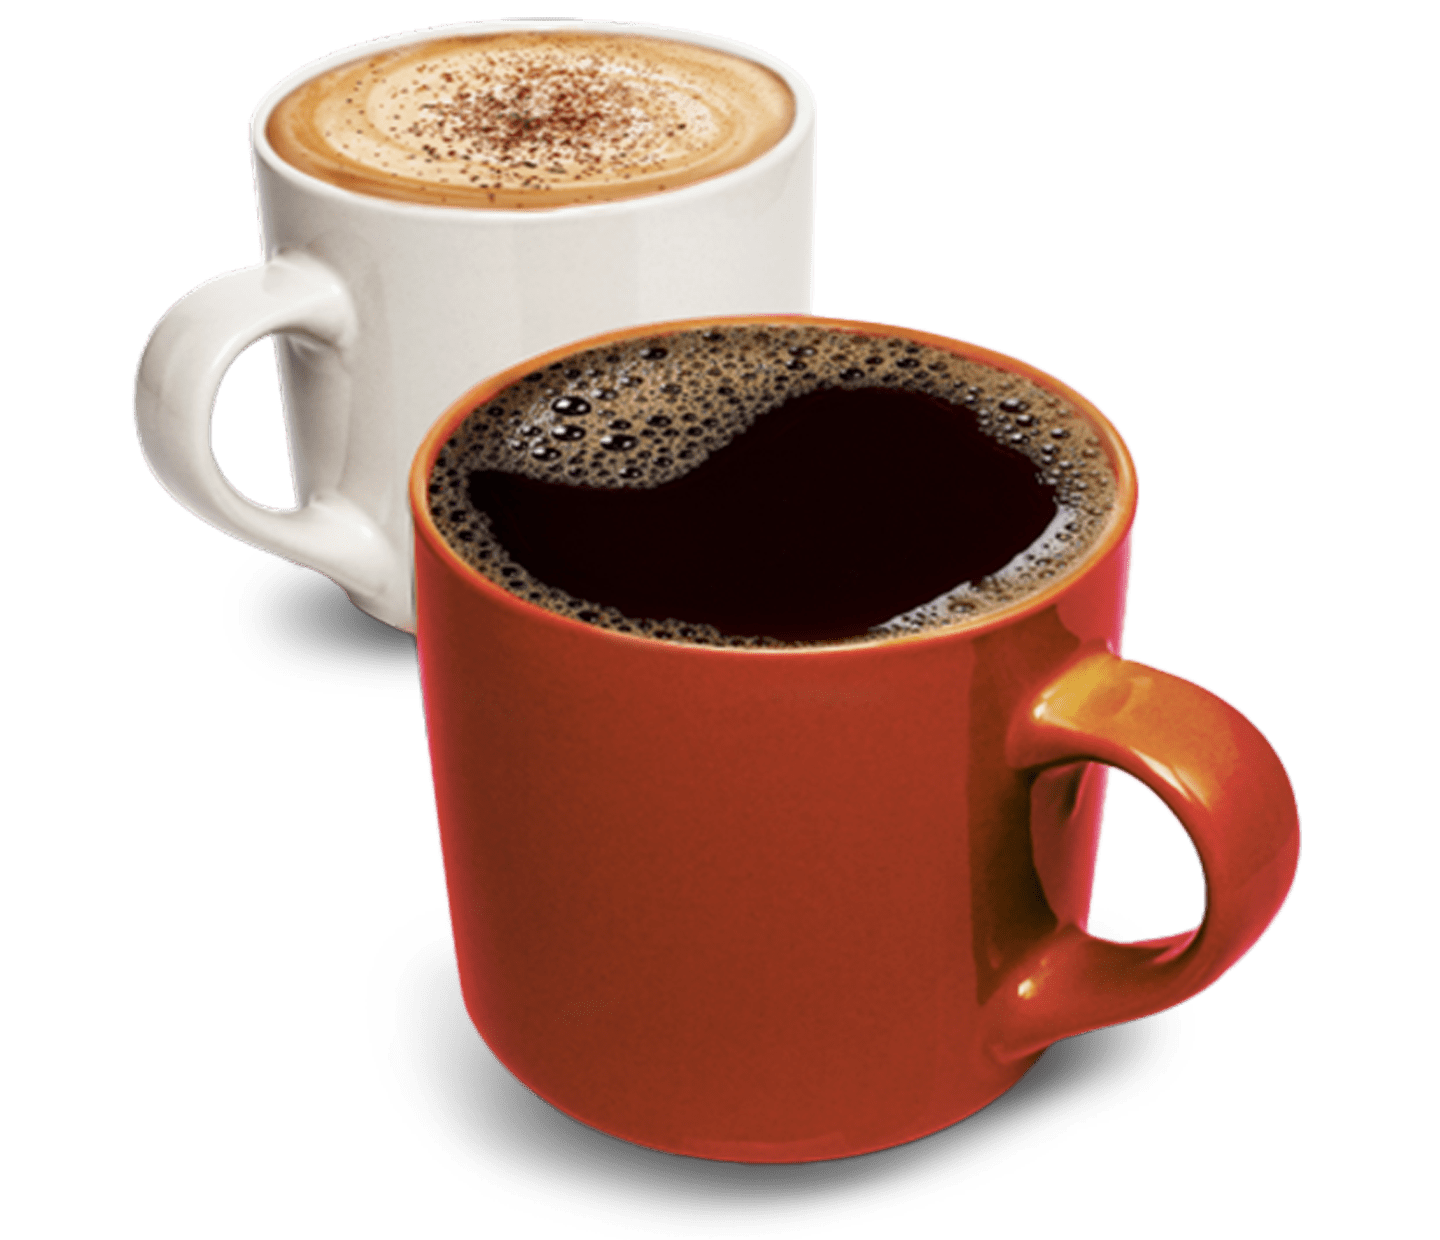 kavos stiprumas ir aromatas